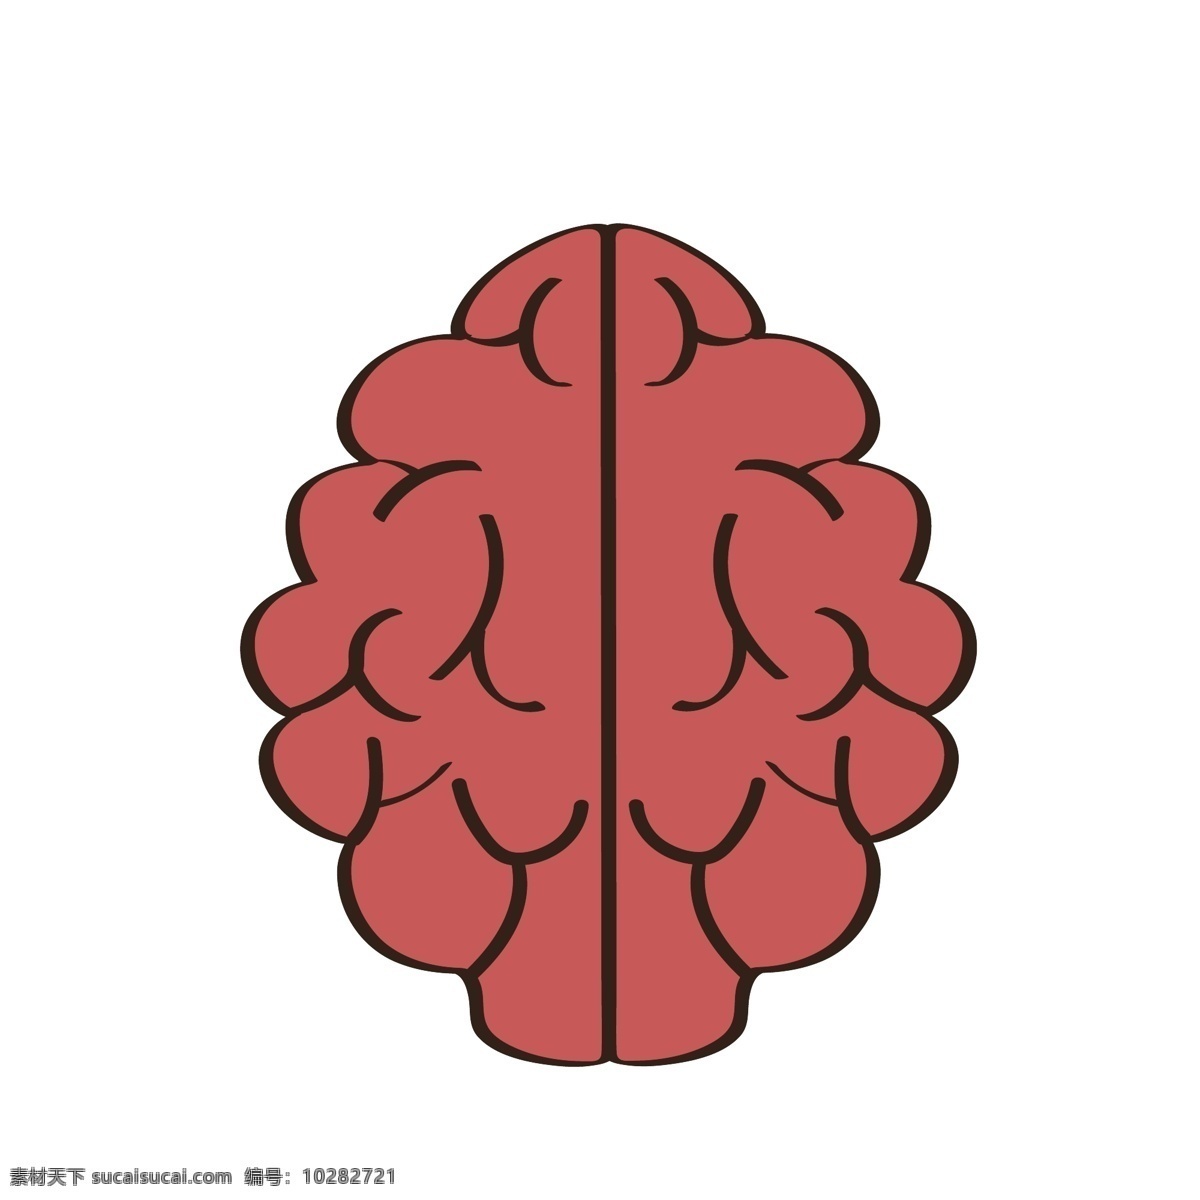 卡通 大脑 矢量 大脑器官 卡通的大脑 人体 人体的 人体的器官 卡通人体器官 卡通的器官